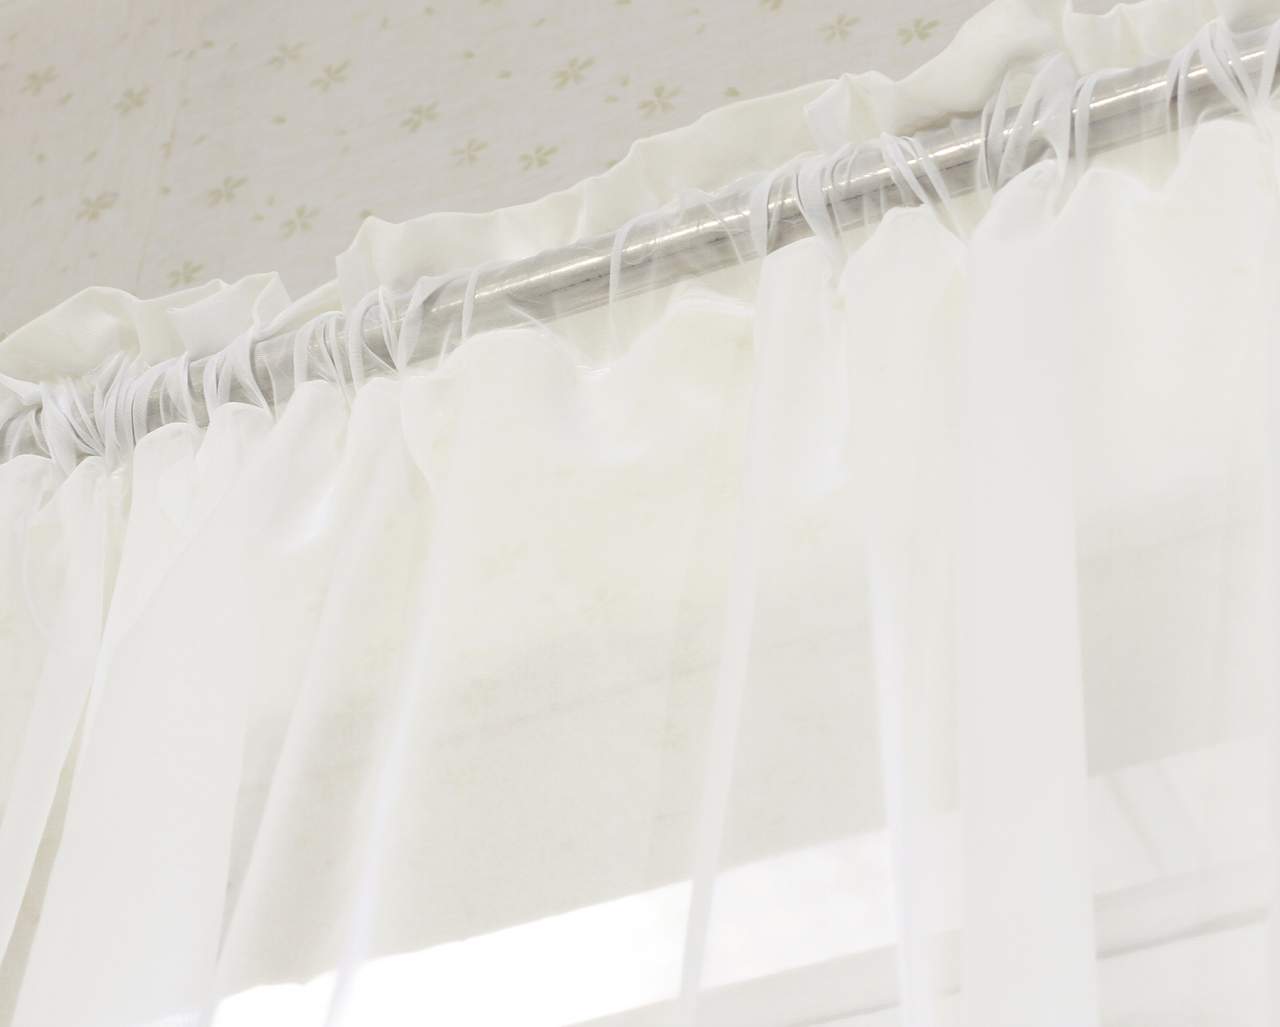 Gardinen Vorhang transparent mit Kräuselband Stores Voile für Schiene  Fensterschal Wohnzimmer Schlafzimmer